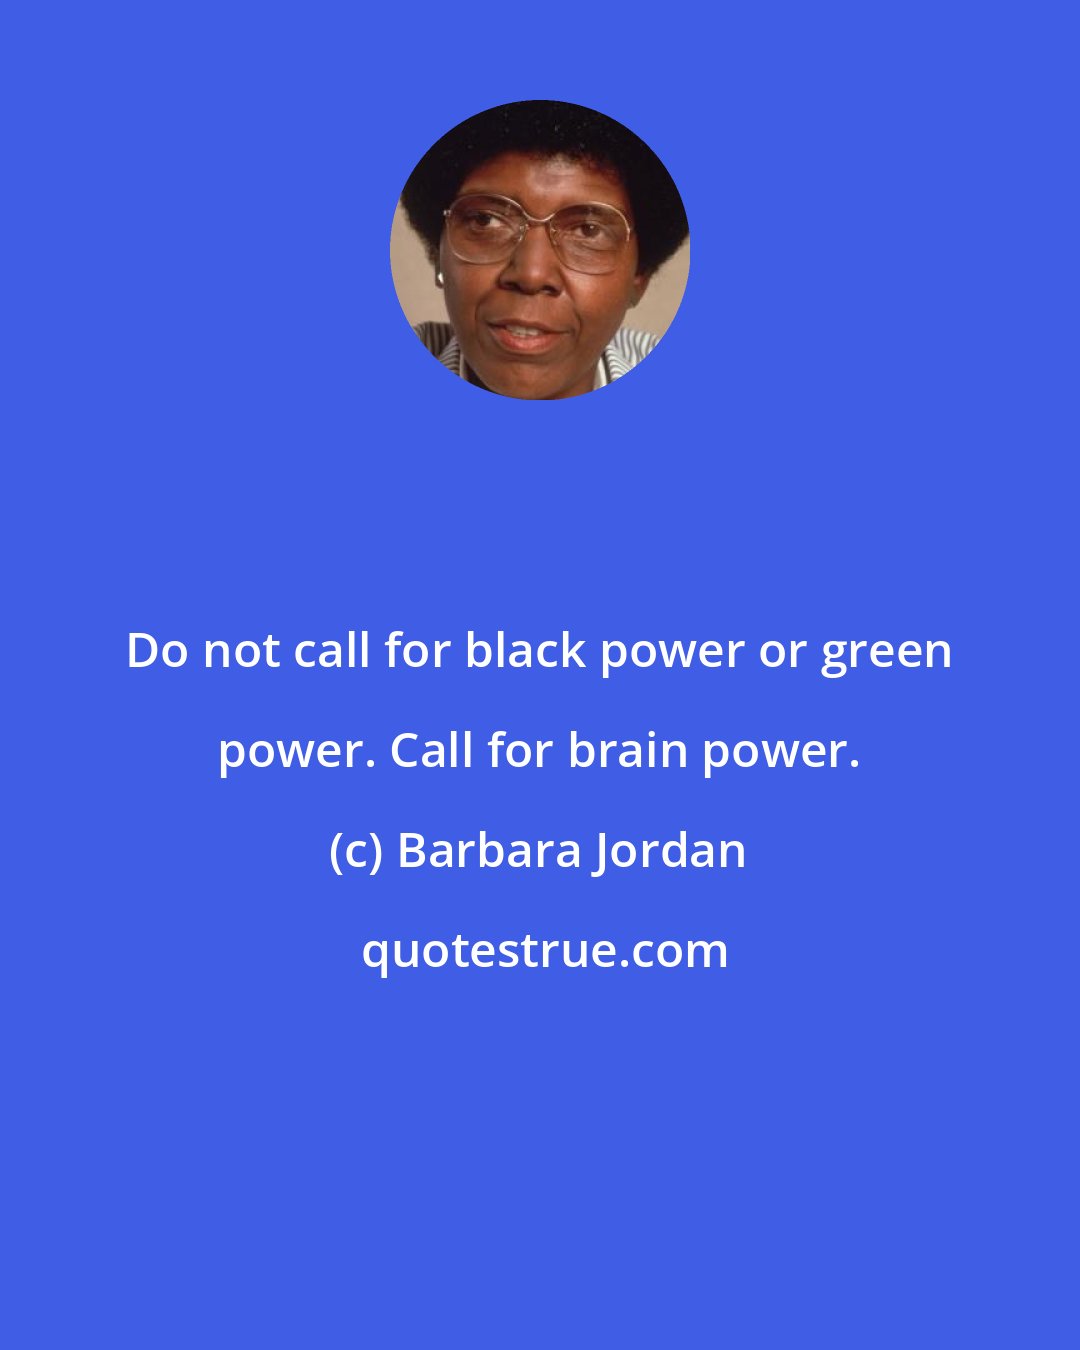 Barbara Jordan: Do not call for black power or green power. Call for brain power.